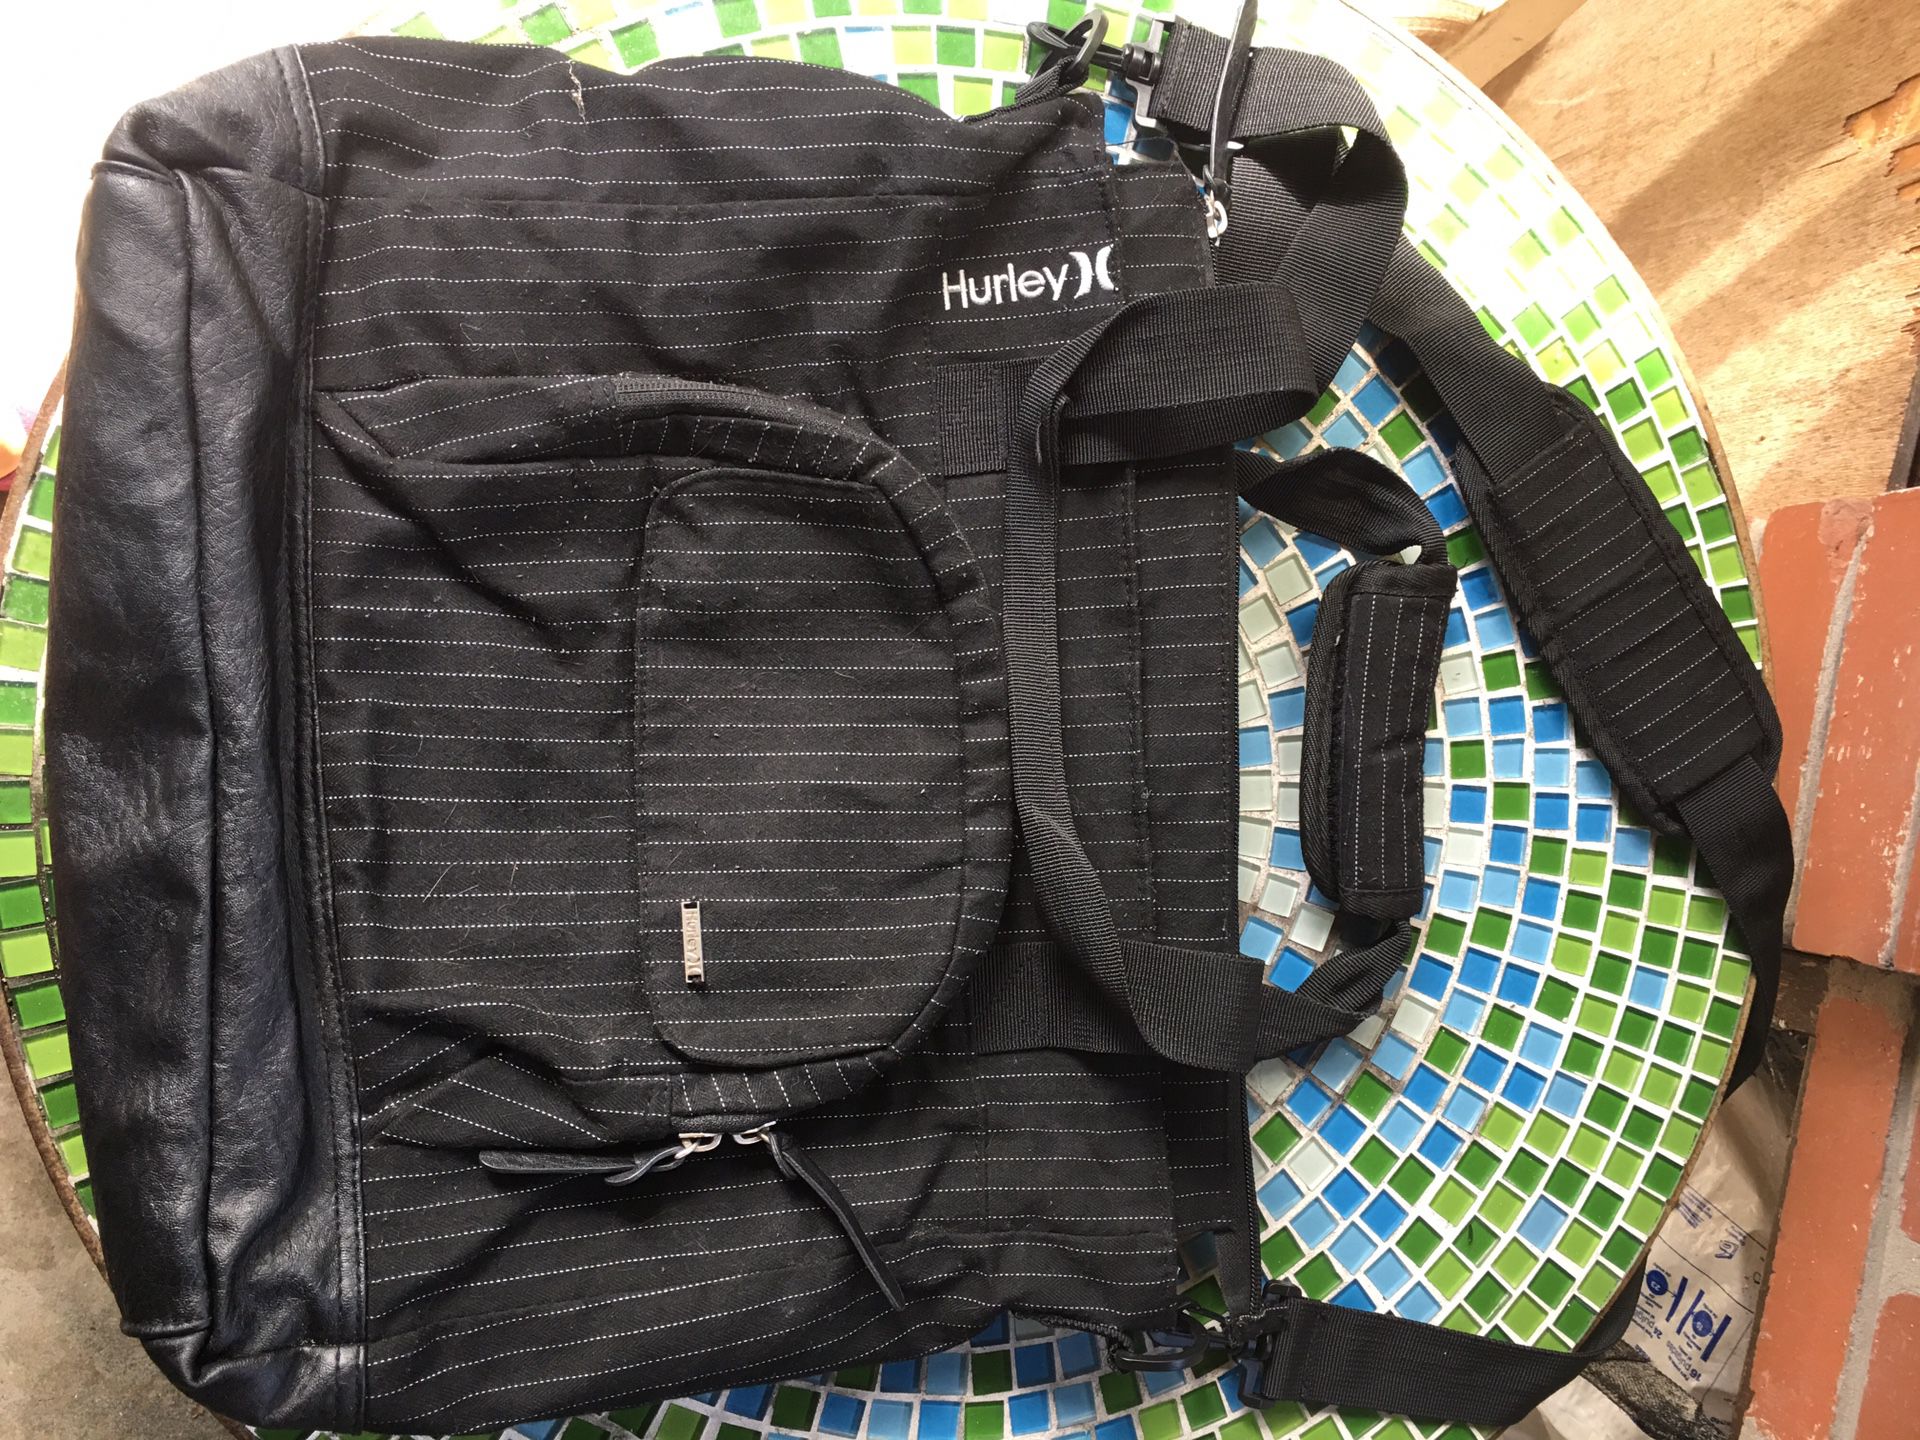 Hurley Messenger Bag